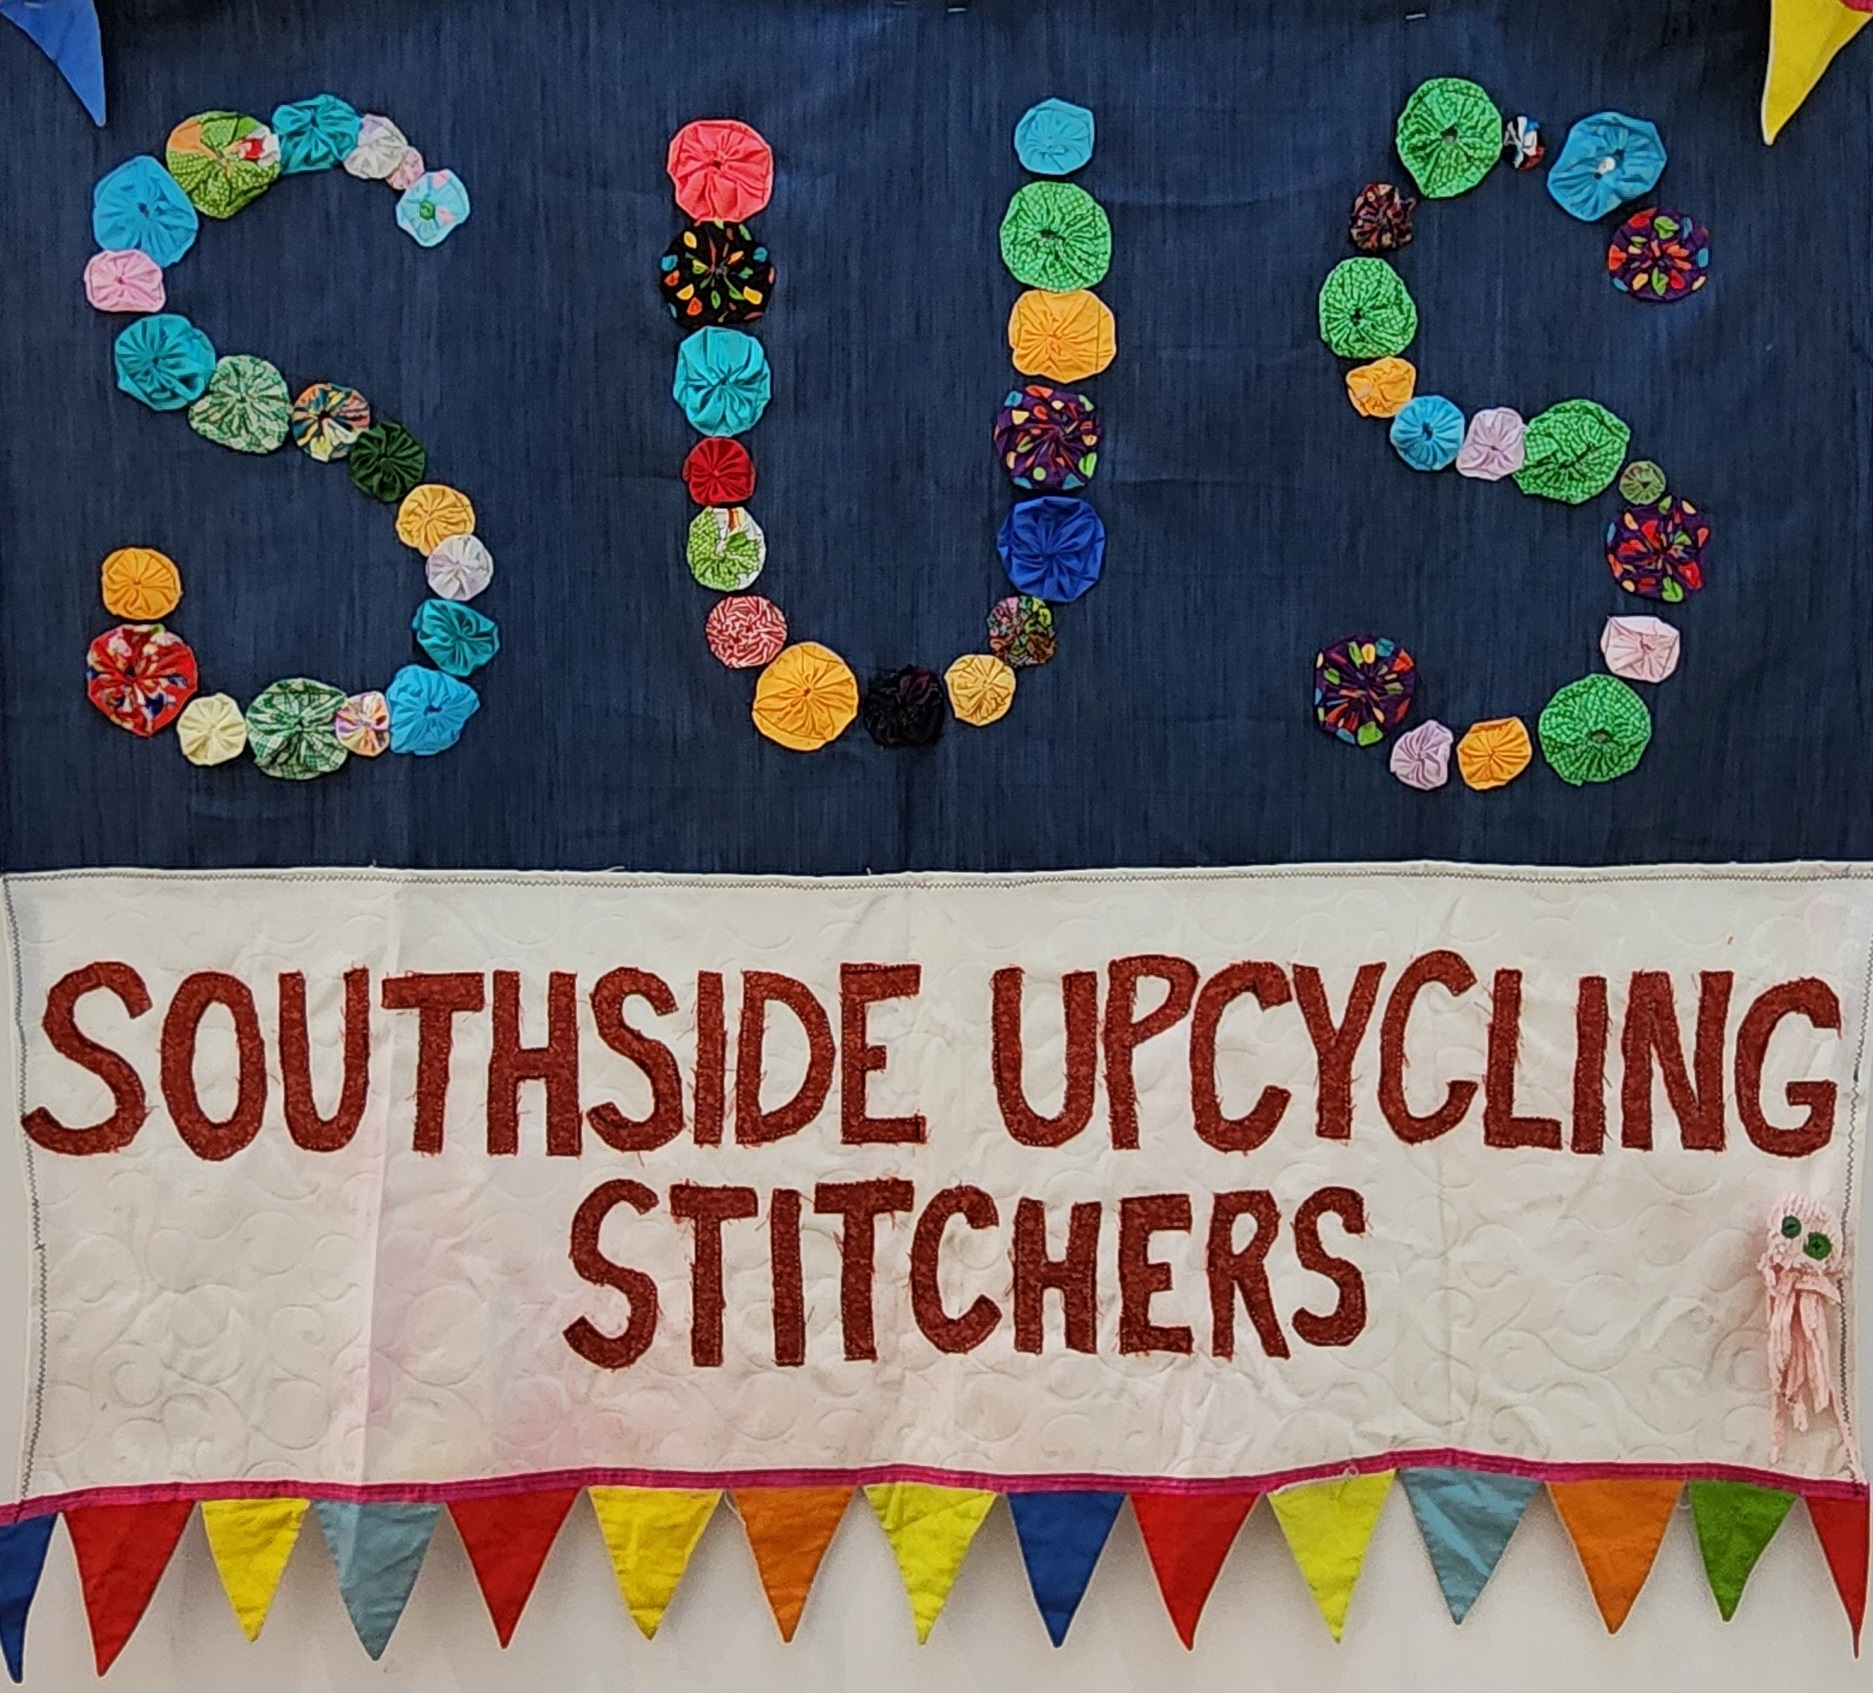 Southside Upcycling Stitchers